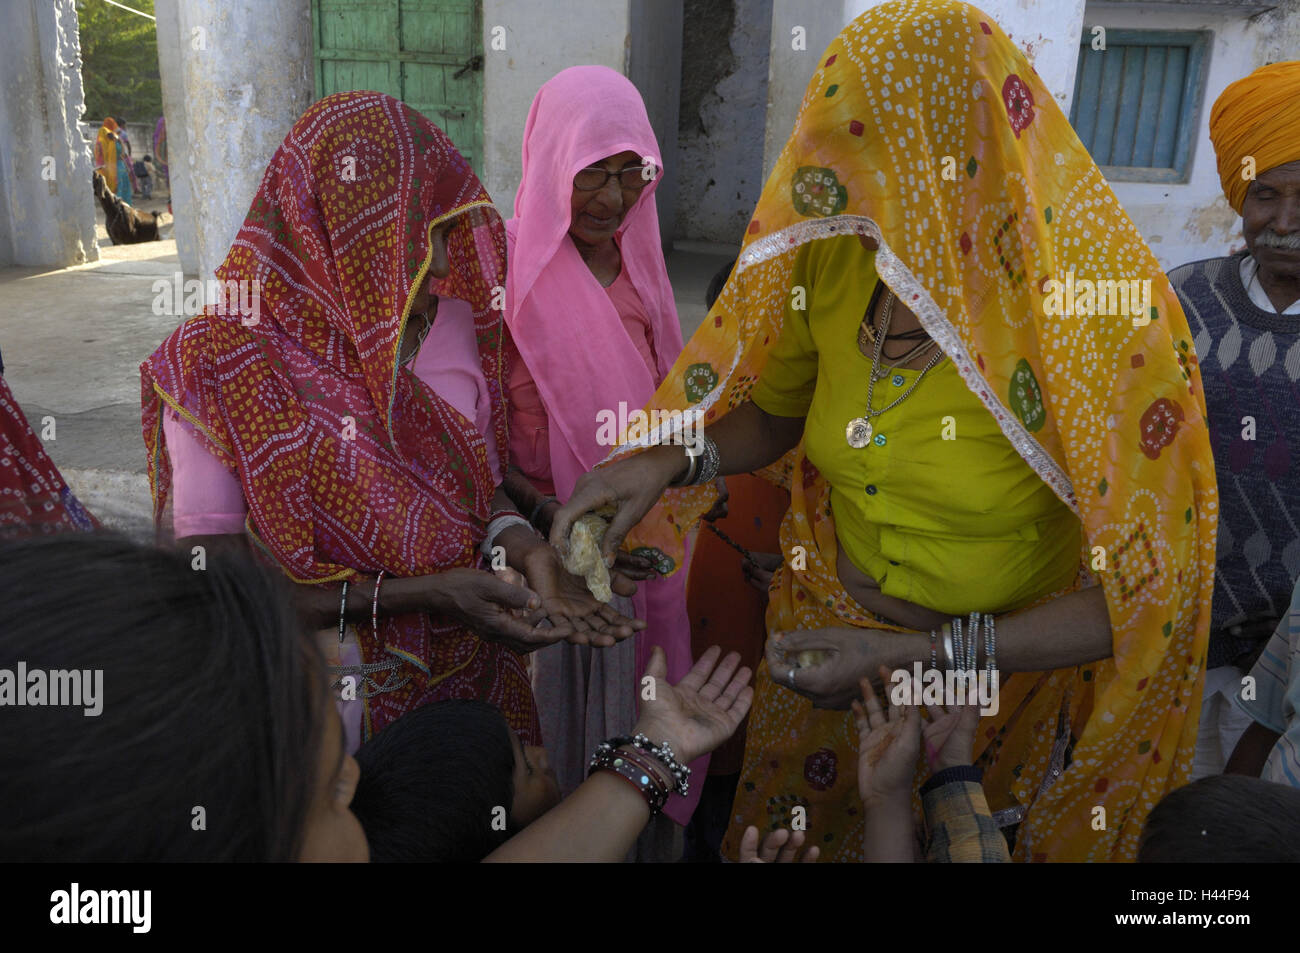 L'Inde, Rajasthan, Pushkar, des femmes, des saris, de couleurs vives, le modèle ne libération, Banque D'Images